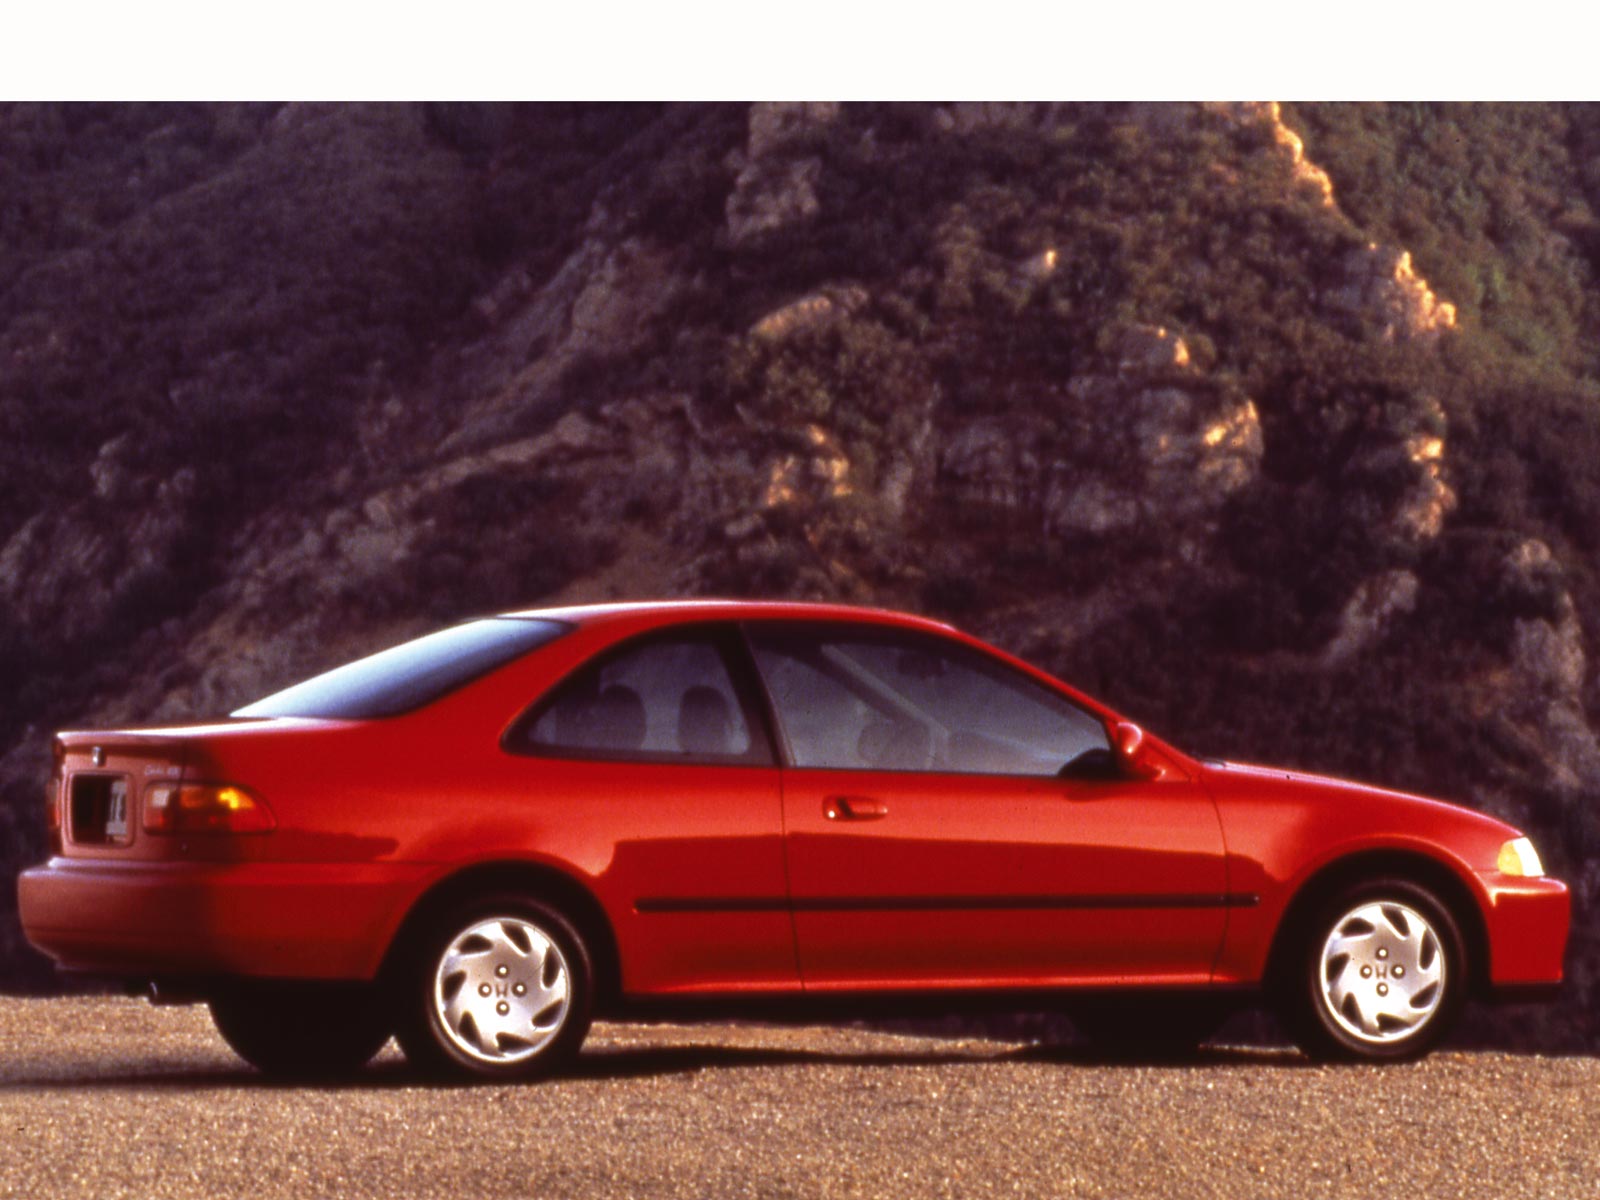 1991 Honda civic dx sedan body kit #1